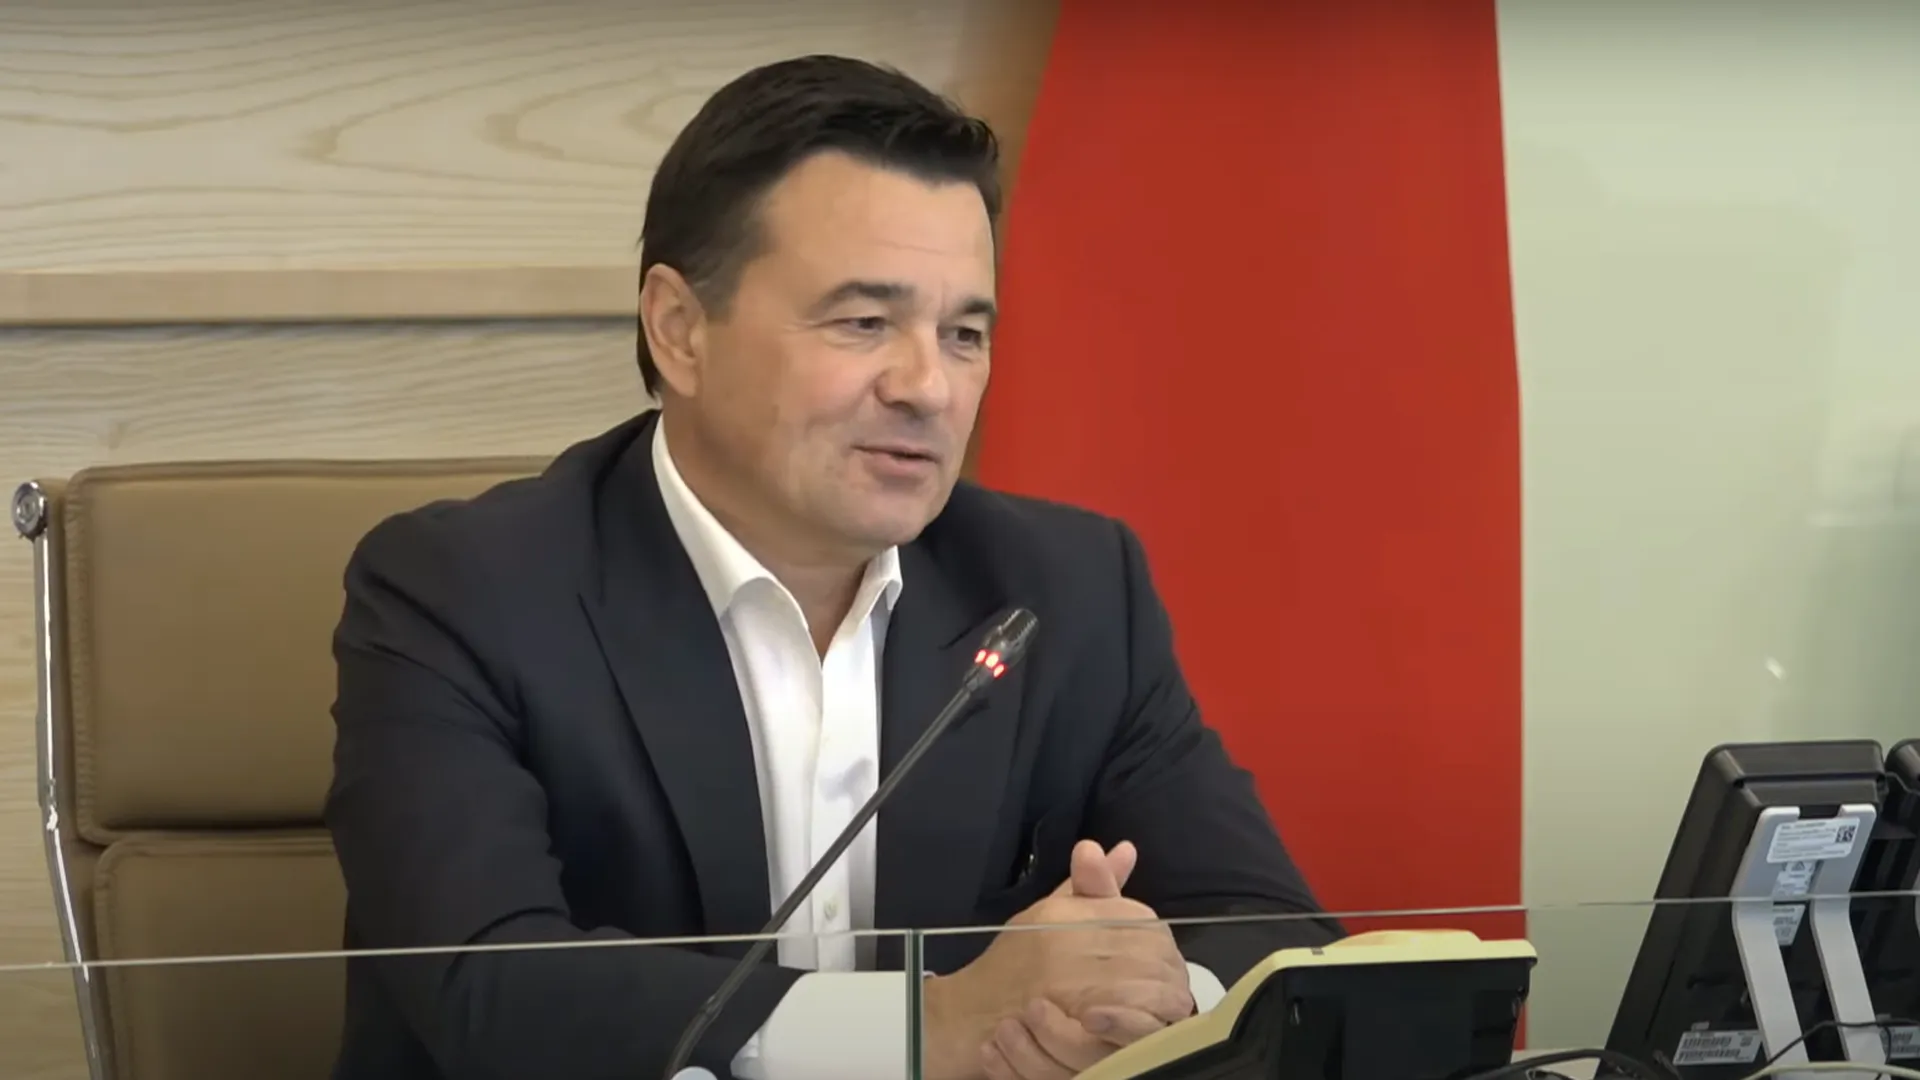 За доверие на выборах поблагодарил губернатор Андрей Воробьев жителей Подмосковья